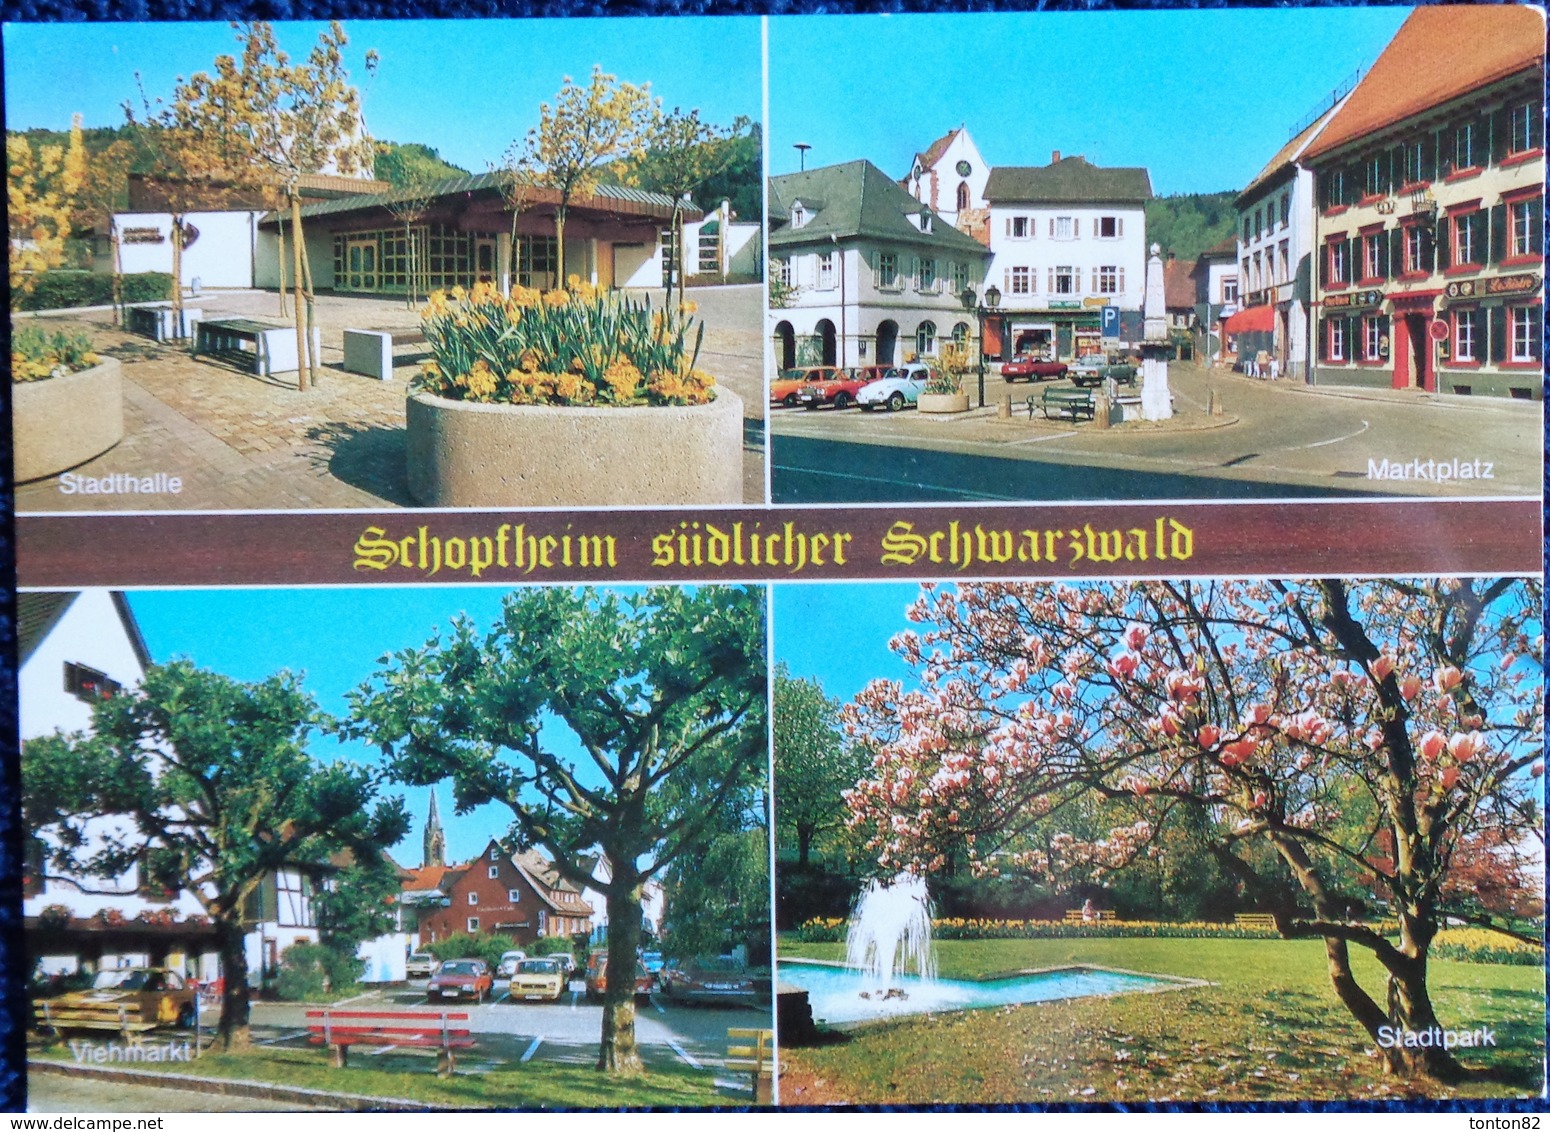 Schopfheim - Wiesental .Multi Vues - Schopfheim